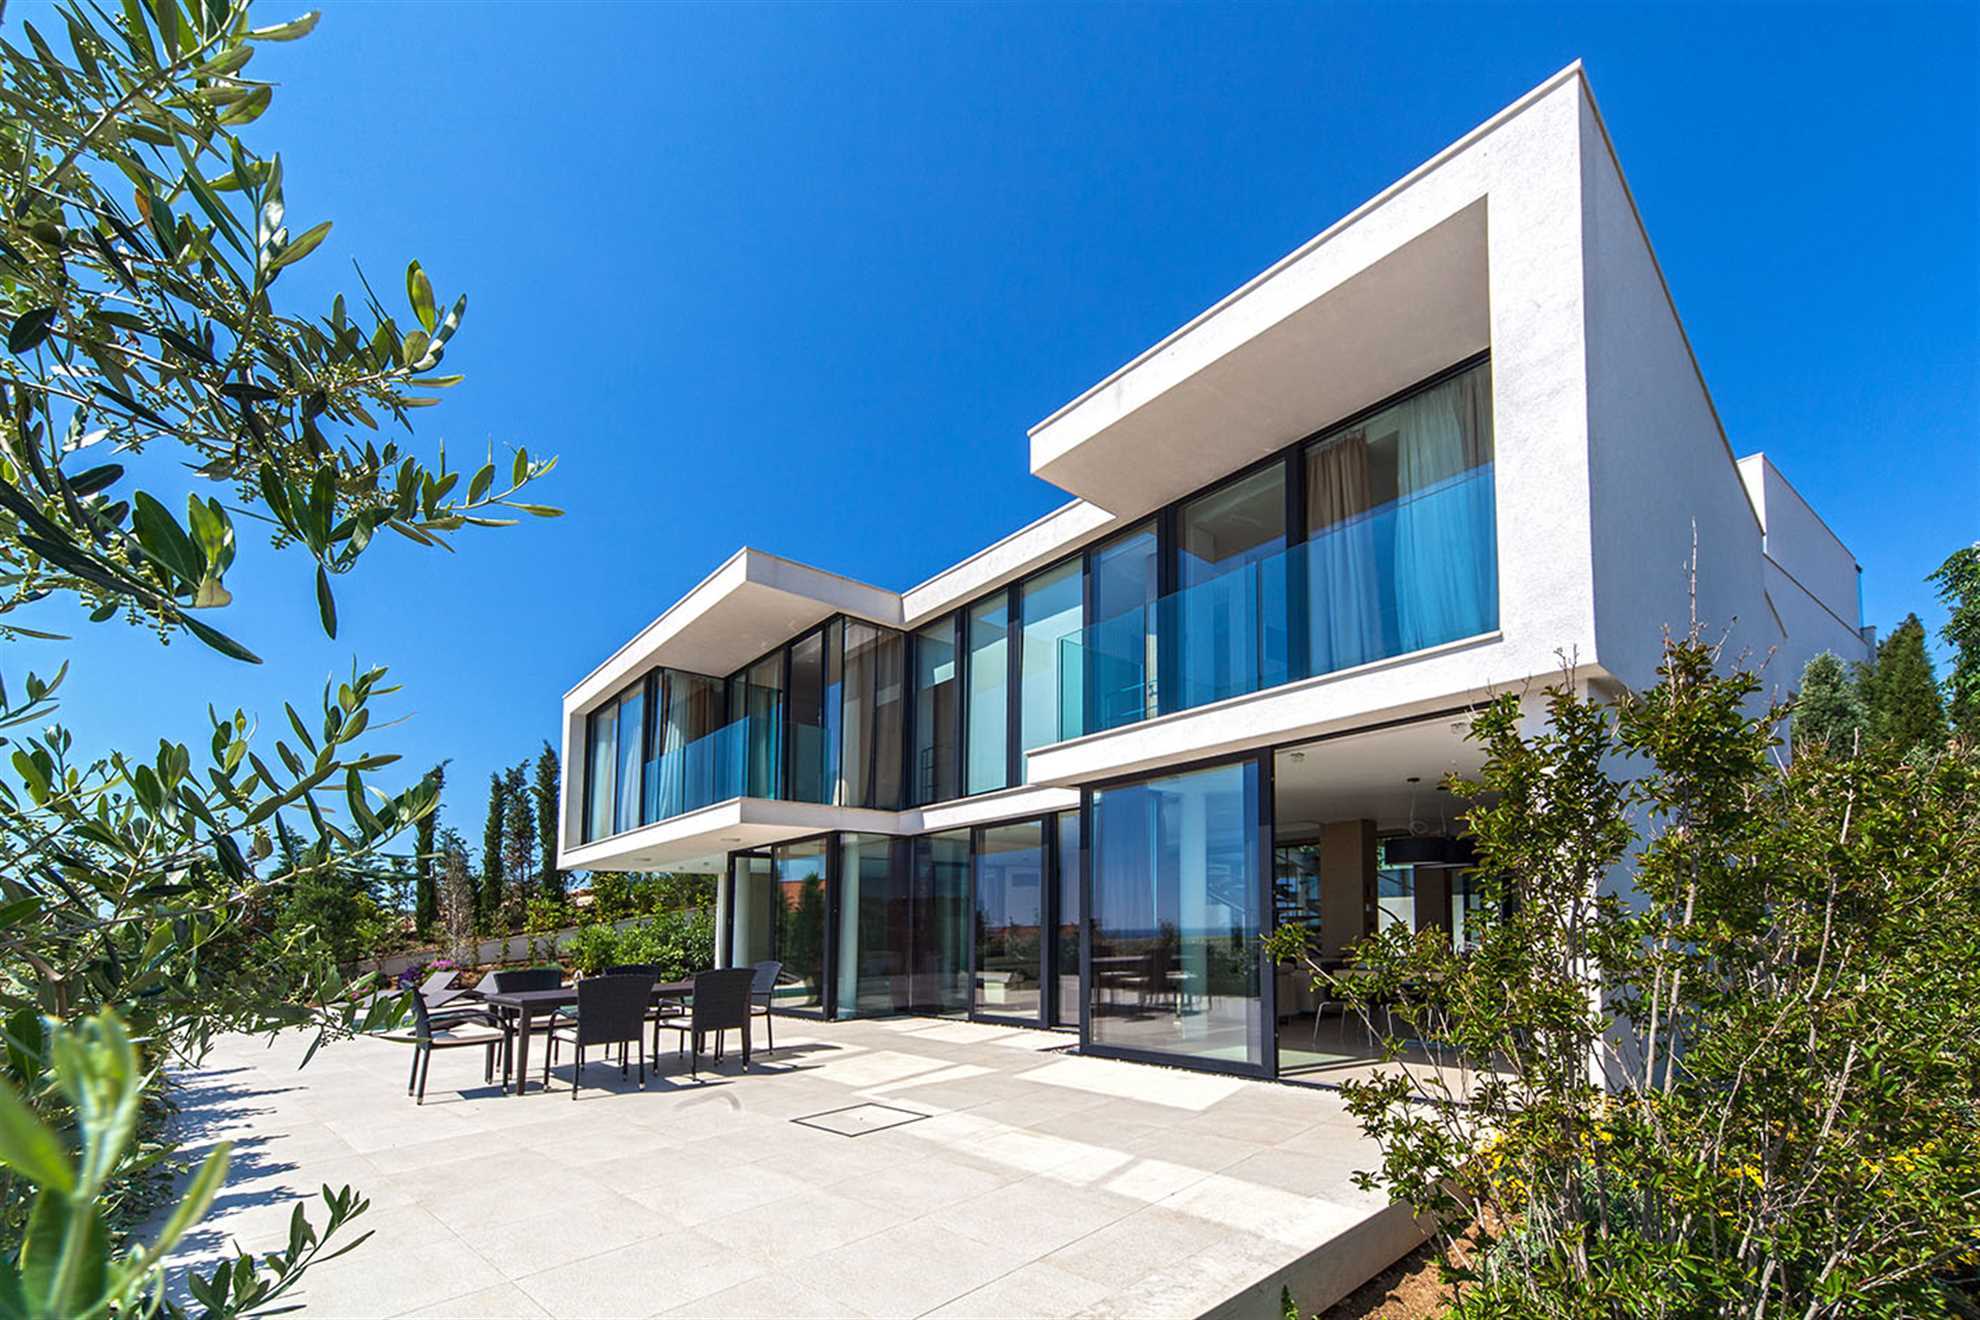 Property Image 2 - Fabulously Styled Luxury Villa Boasting Splendid Views on the Adriatic Coast